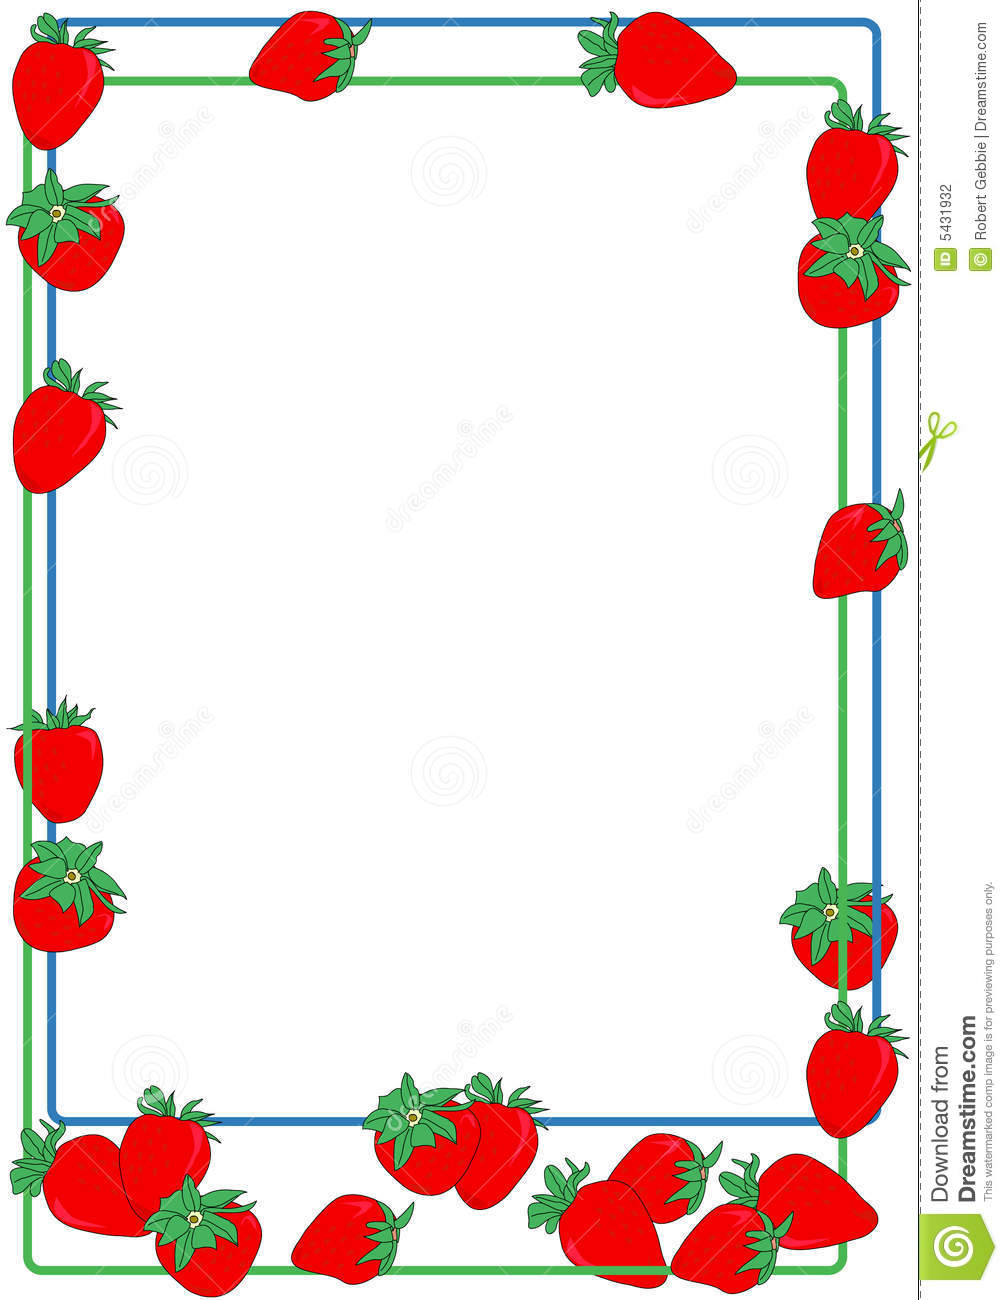 Strawberry clipart border.